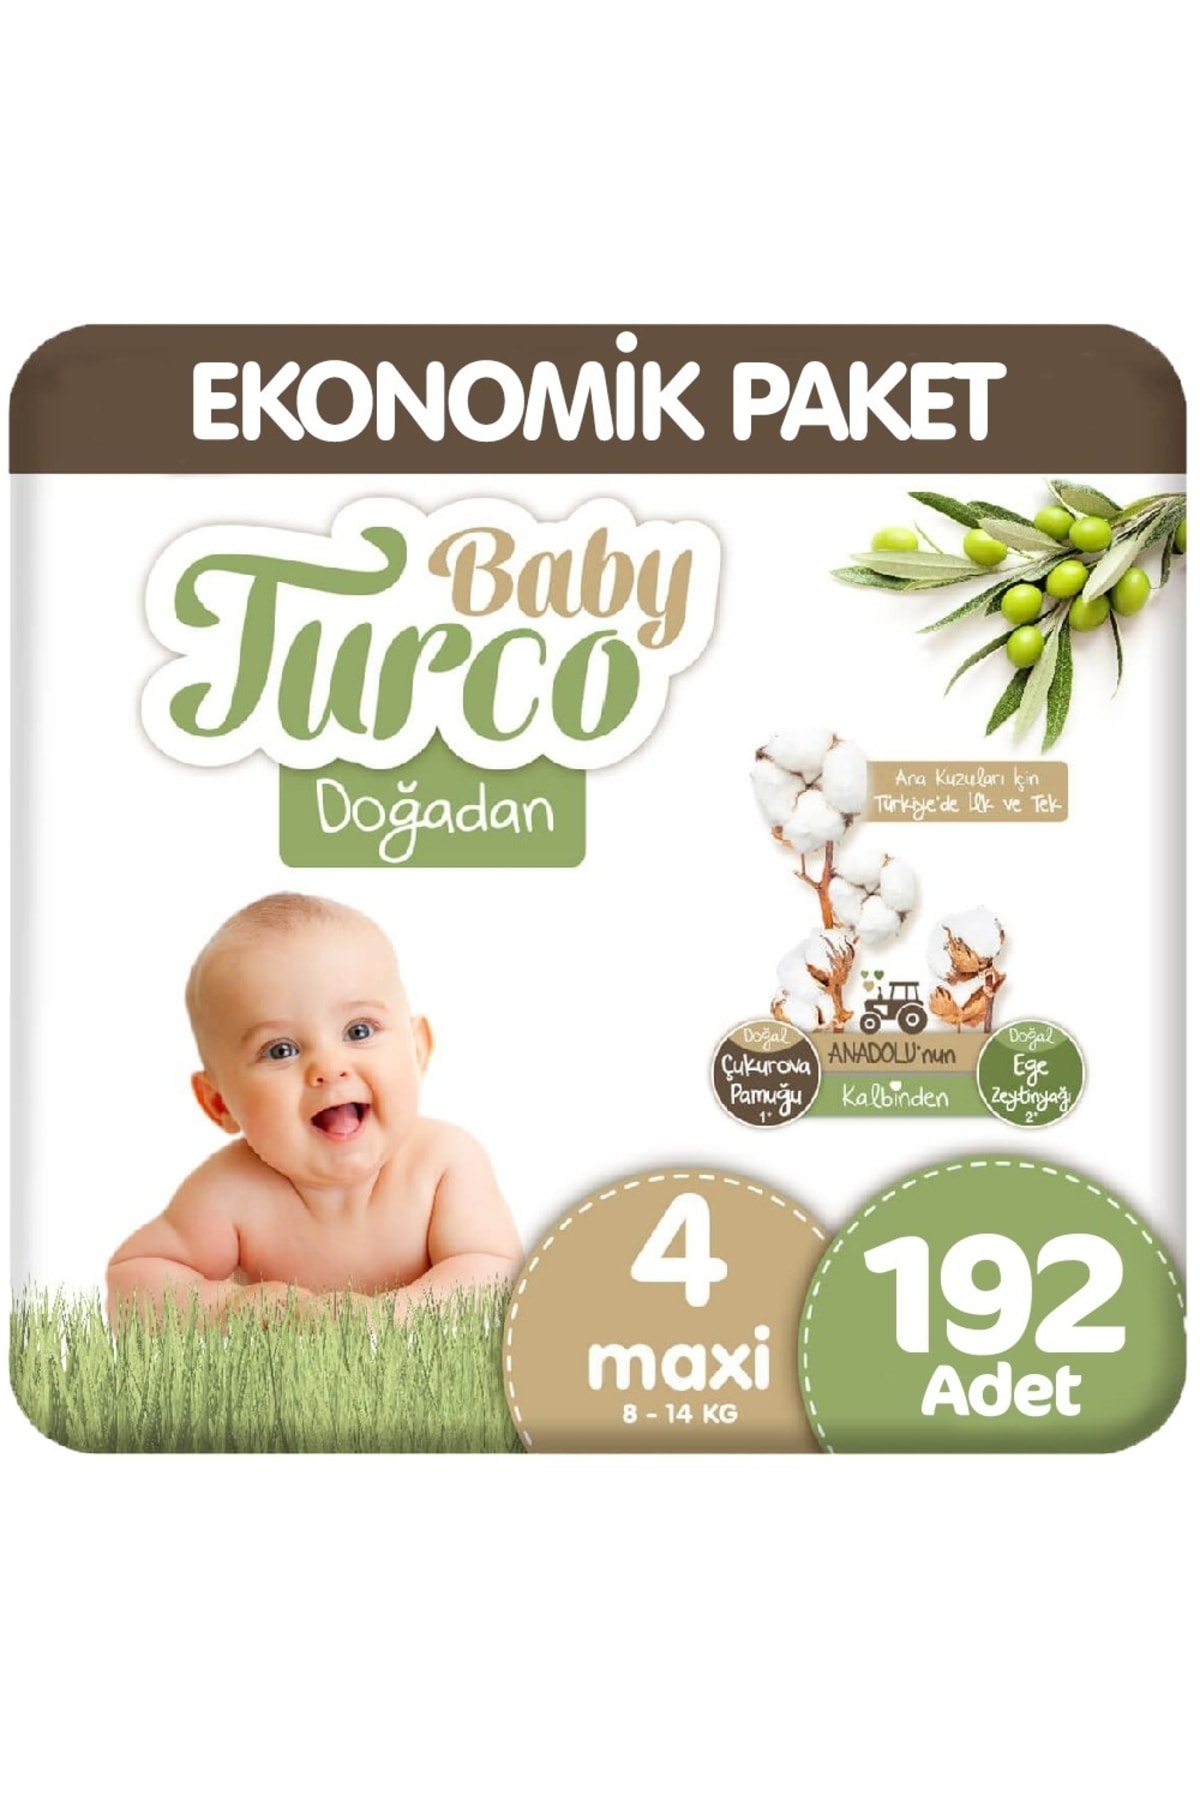 Baby Turco Doğadan 4 Beden Ekonomik 48x4 192 Adet